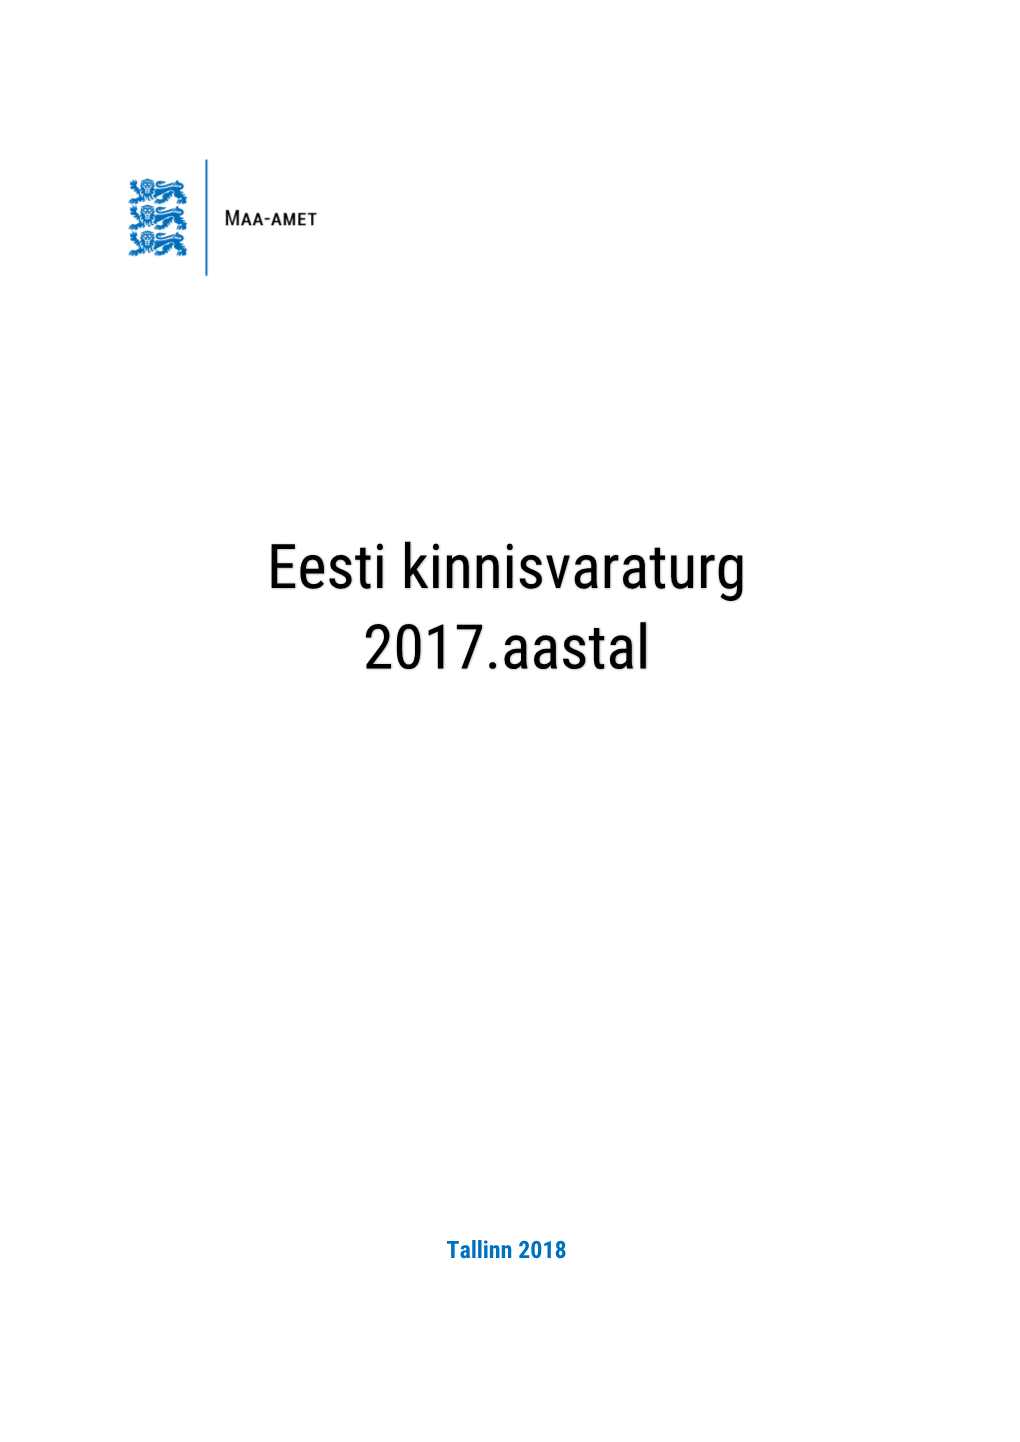 Eesti Kinnisvaraturg 2017.Aastal